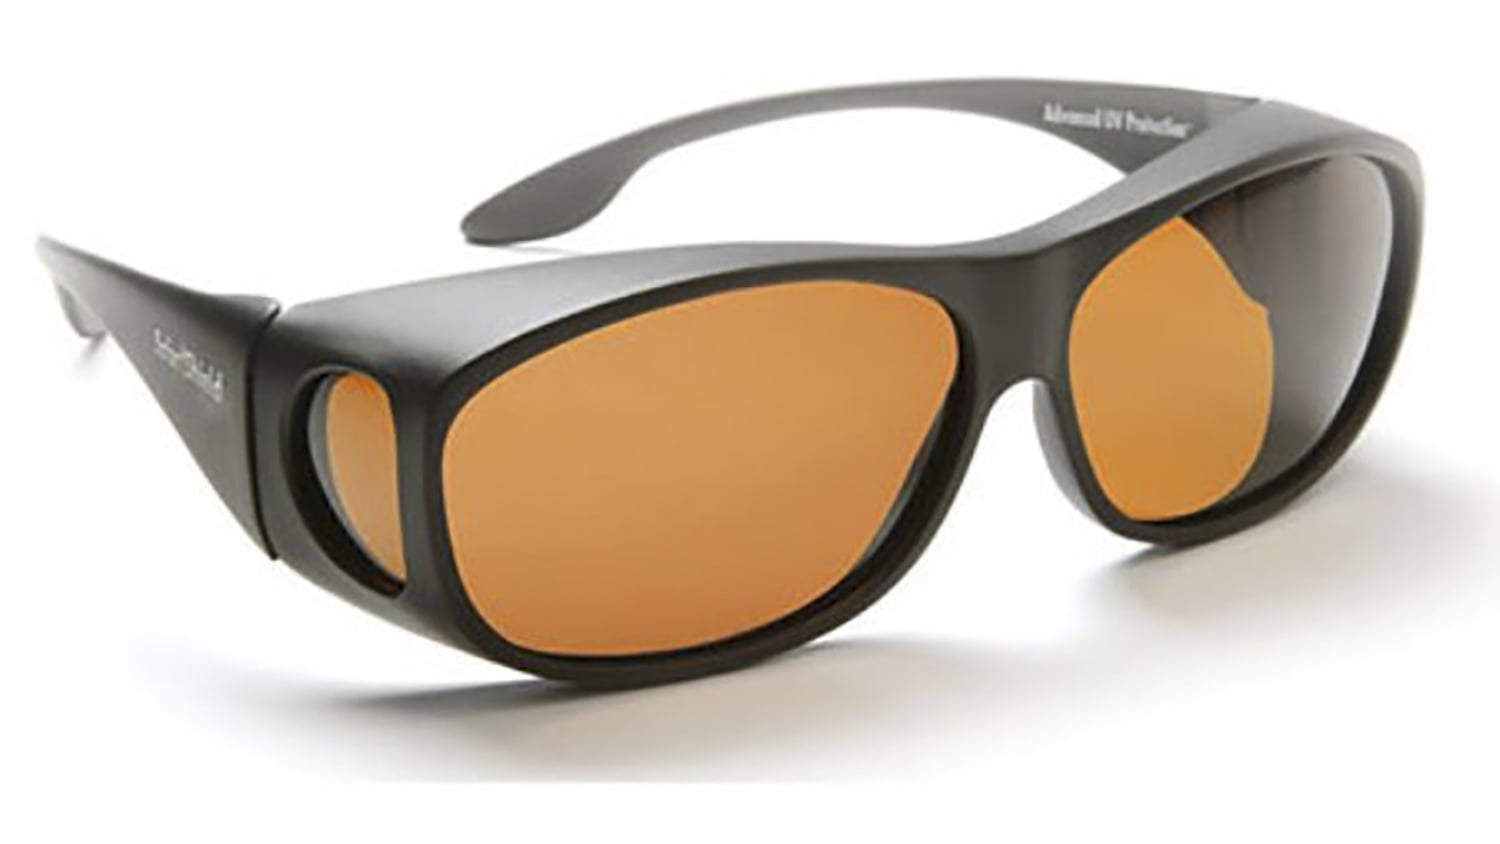 Striker Sunglasses Polarized Brown Cat-3 UV400 Lenses Side-Shields 